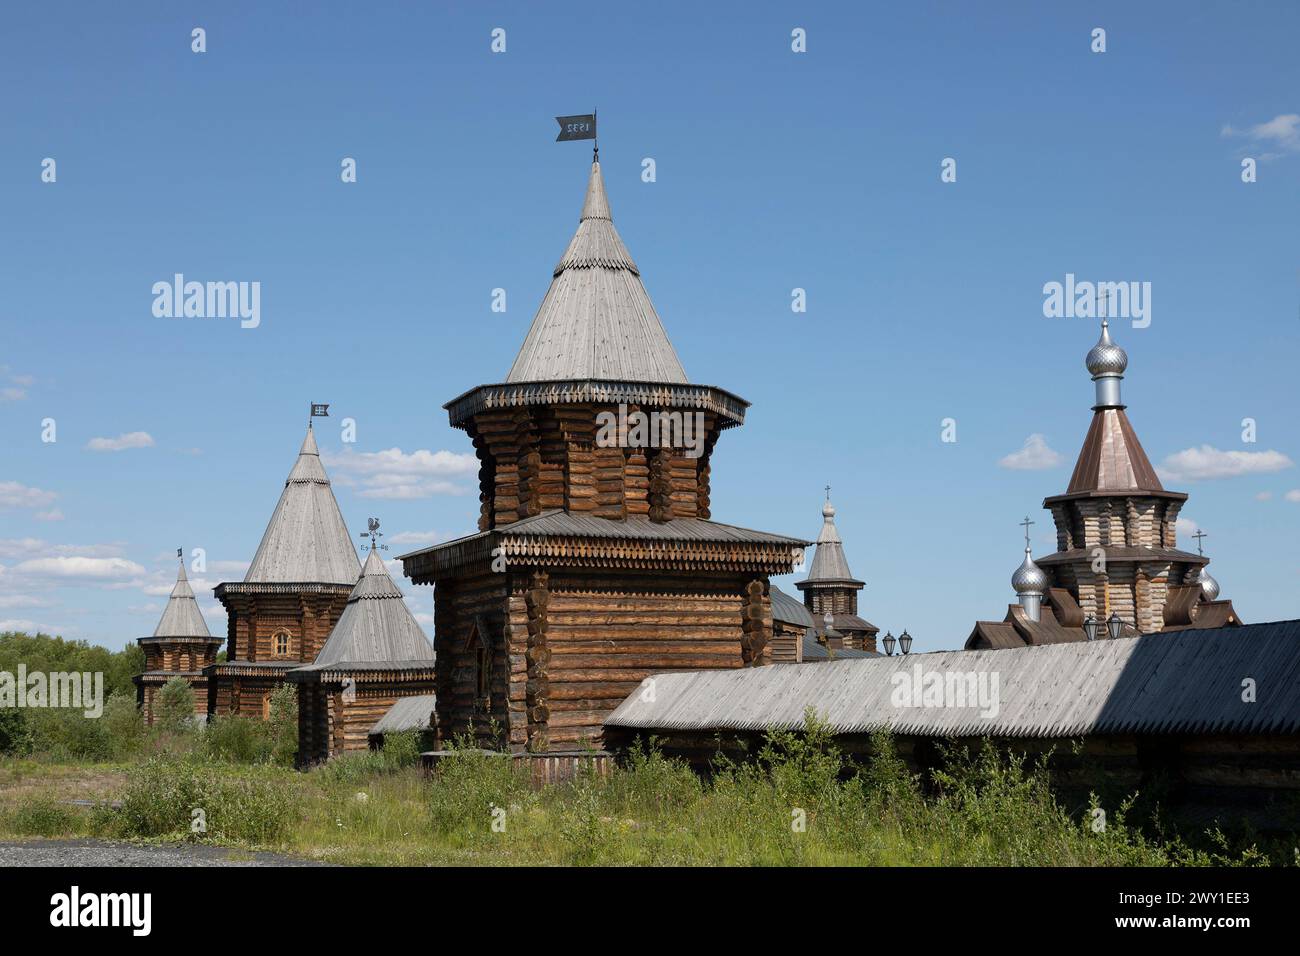 Monastère Sainte Trinité Trifonov Pechenga. Le monastère le plus septentrional du monde. Russie, région de Mourmansk Banque D'Images